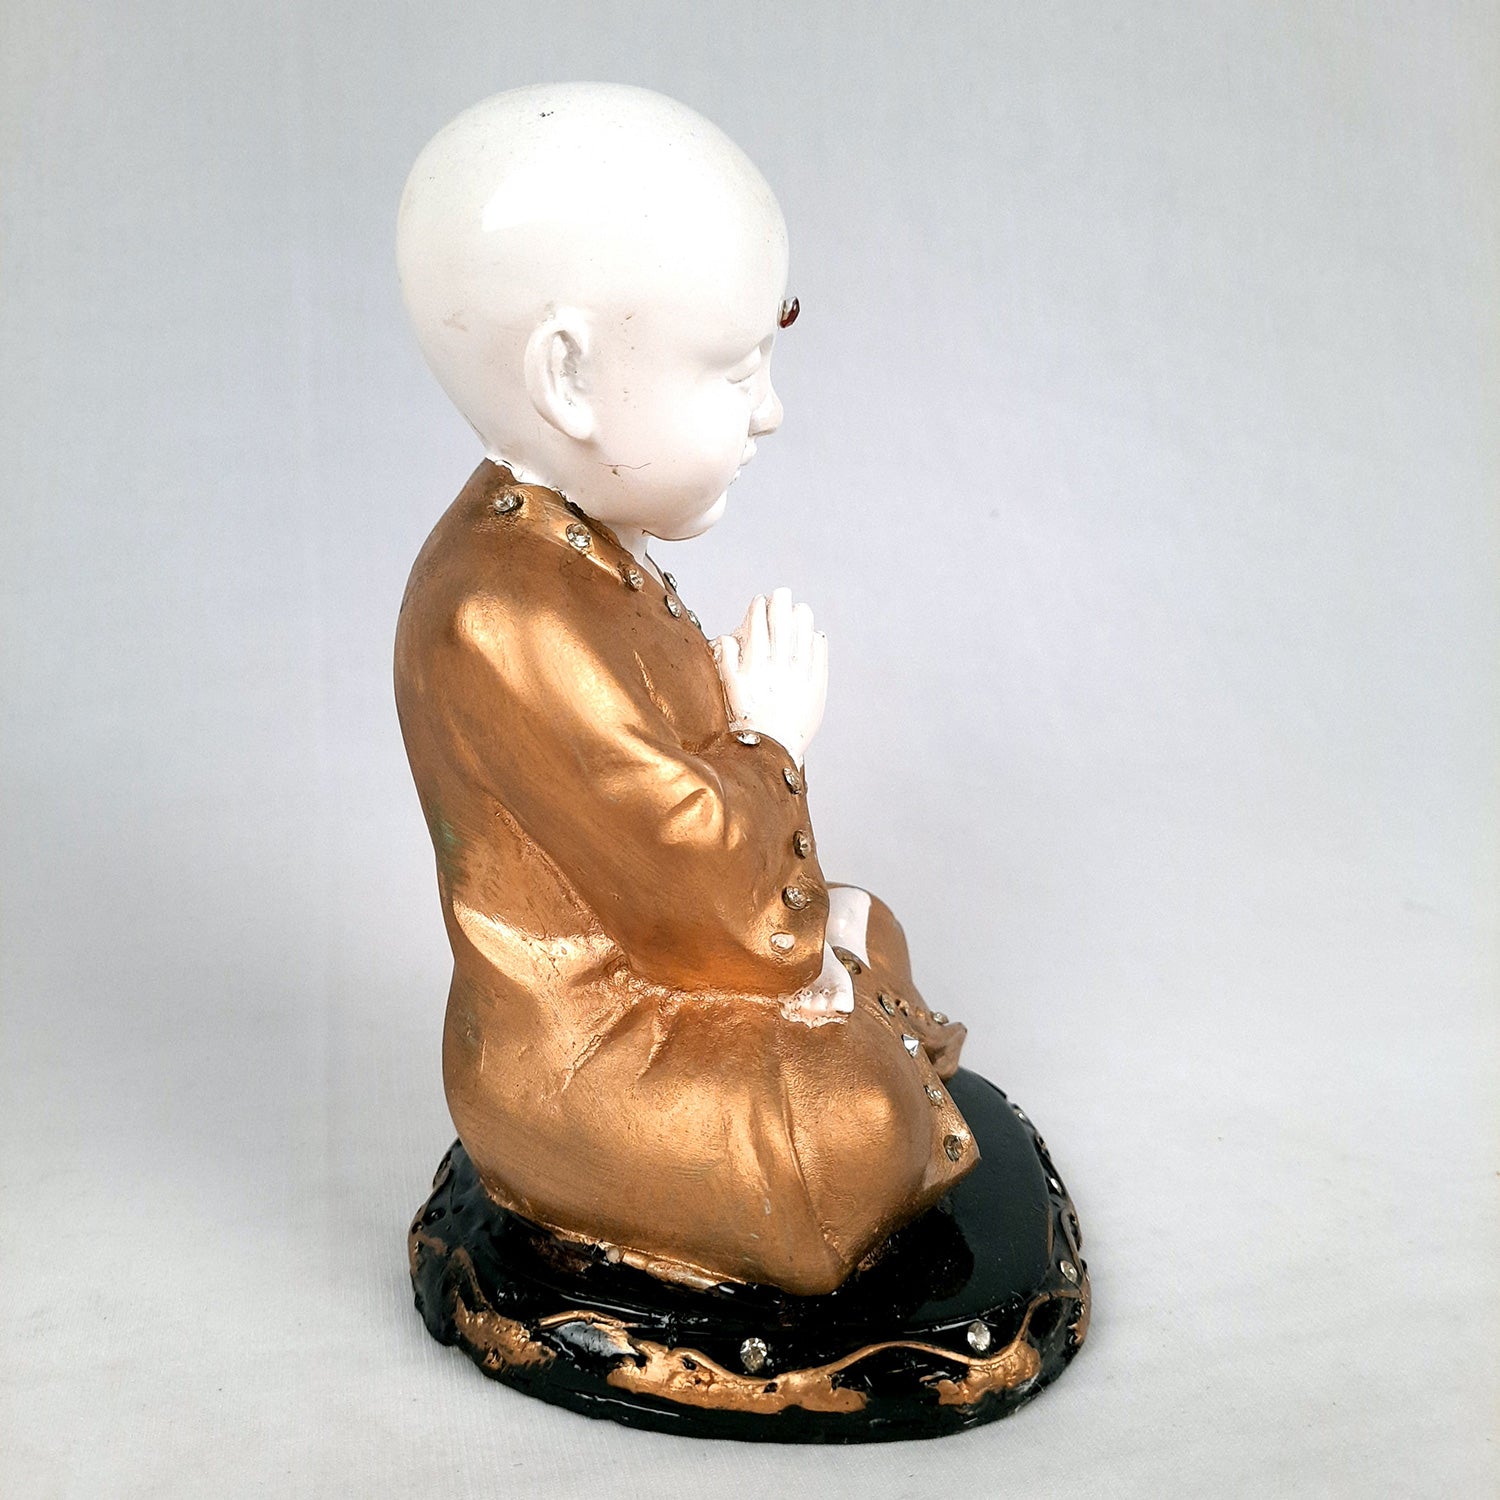 Baby Monk Showpiece - for Home & Garden Decor - 8 Inch-Apkamart #Style_Design 2